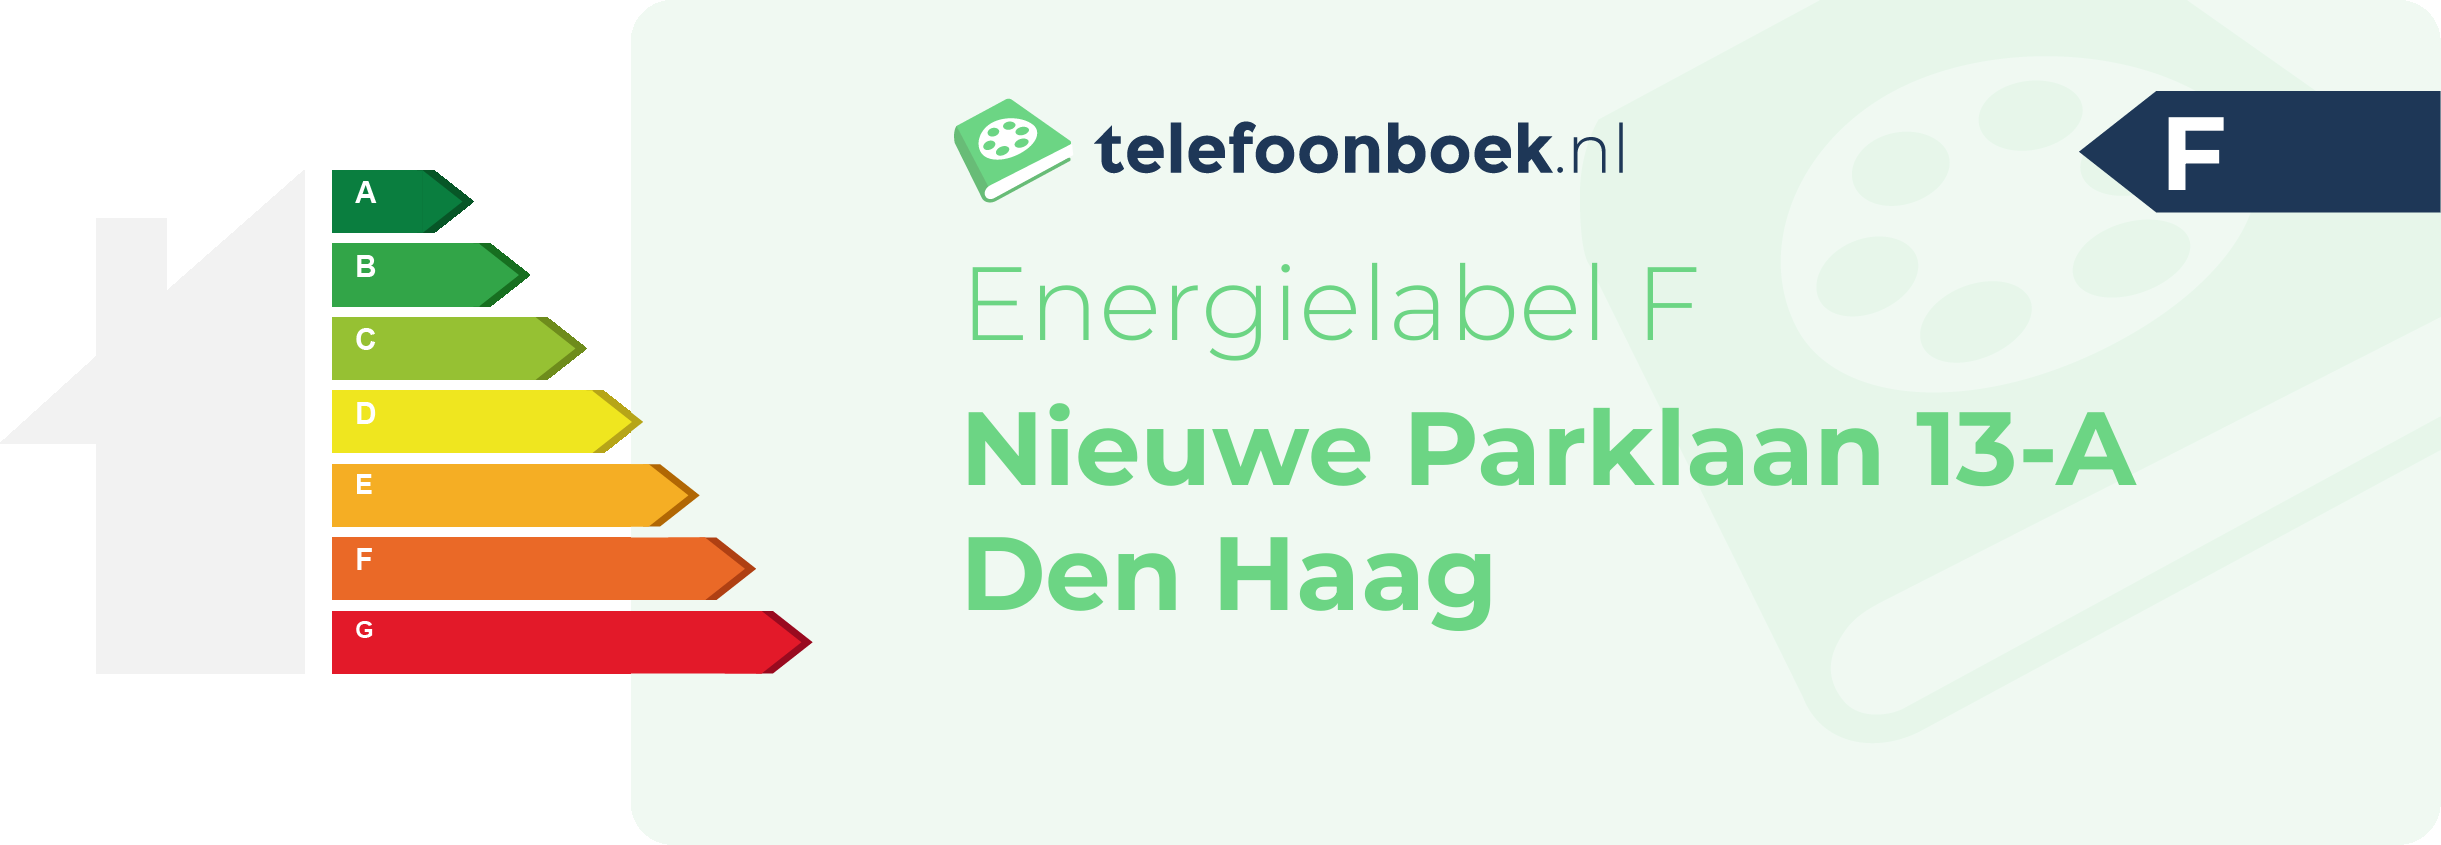 Energielabel Nieuwe Parklaan 13-A Den Haag